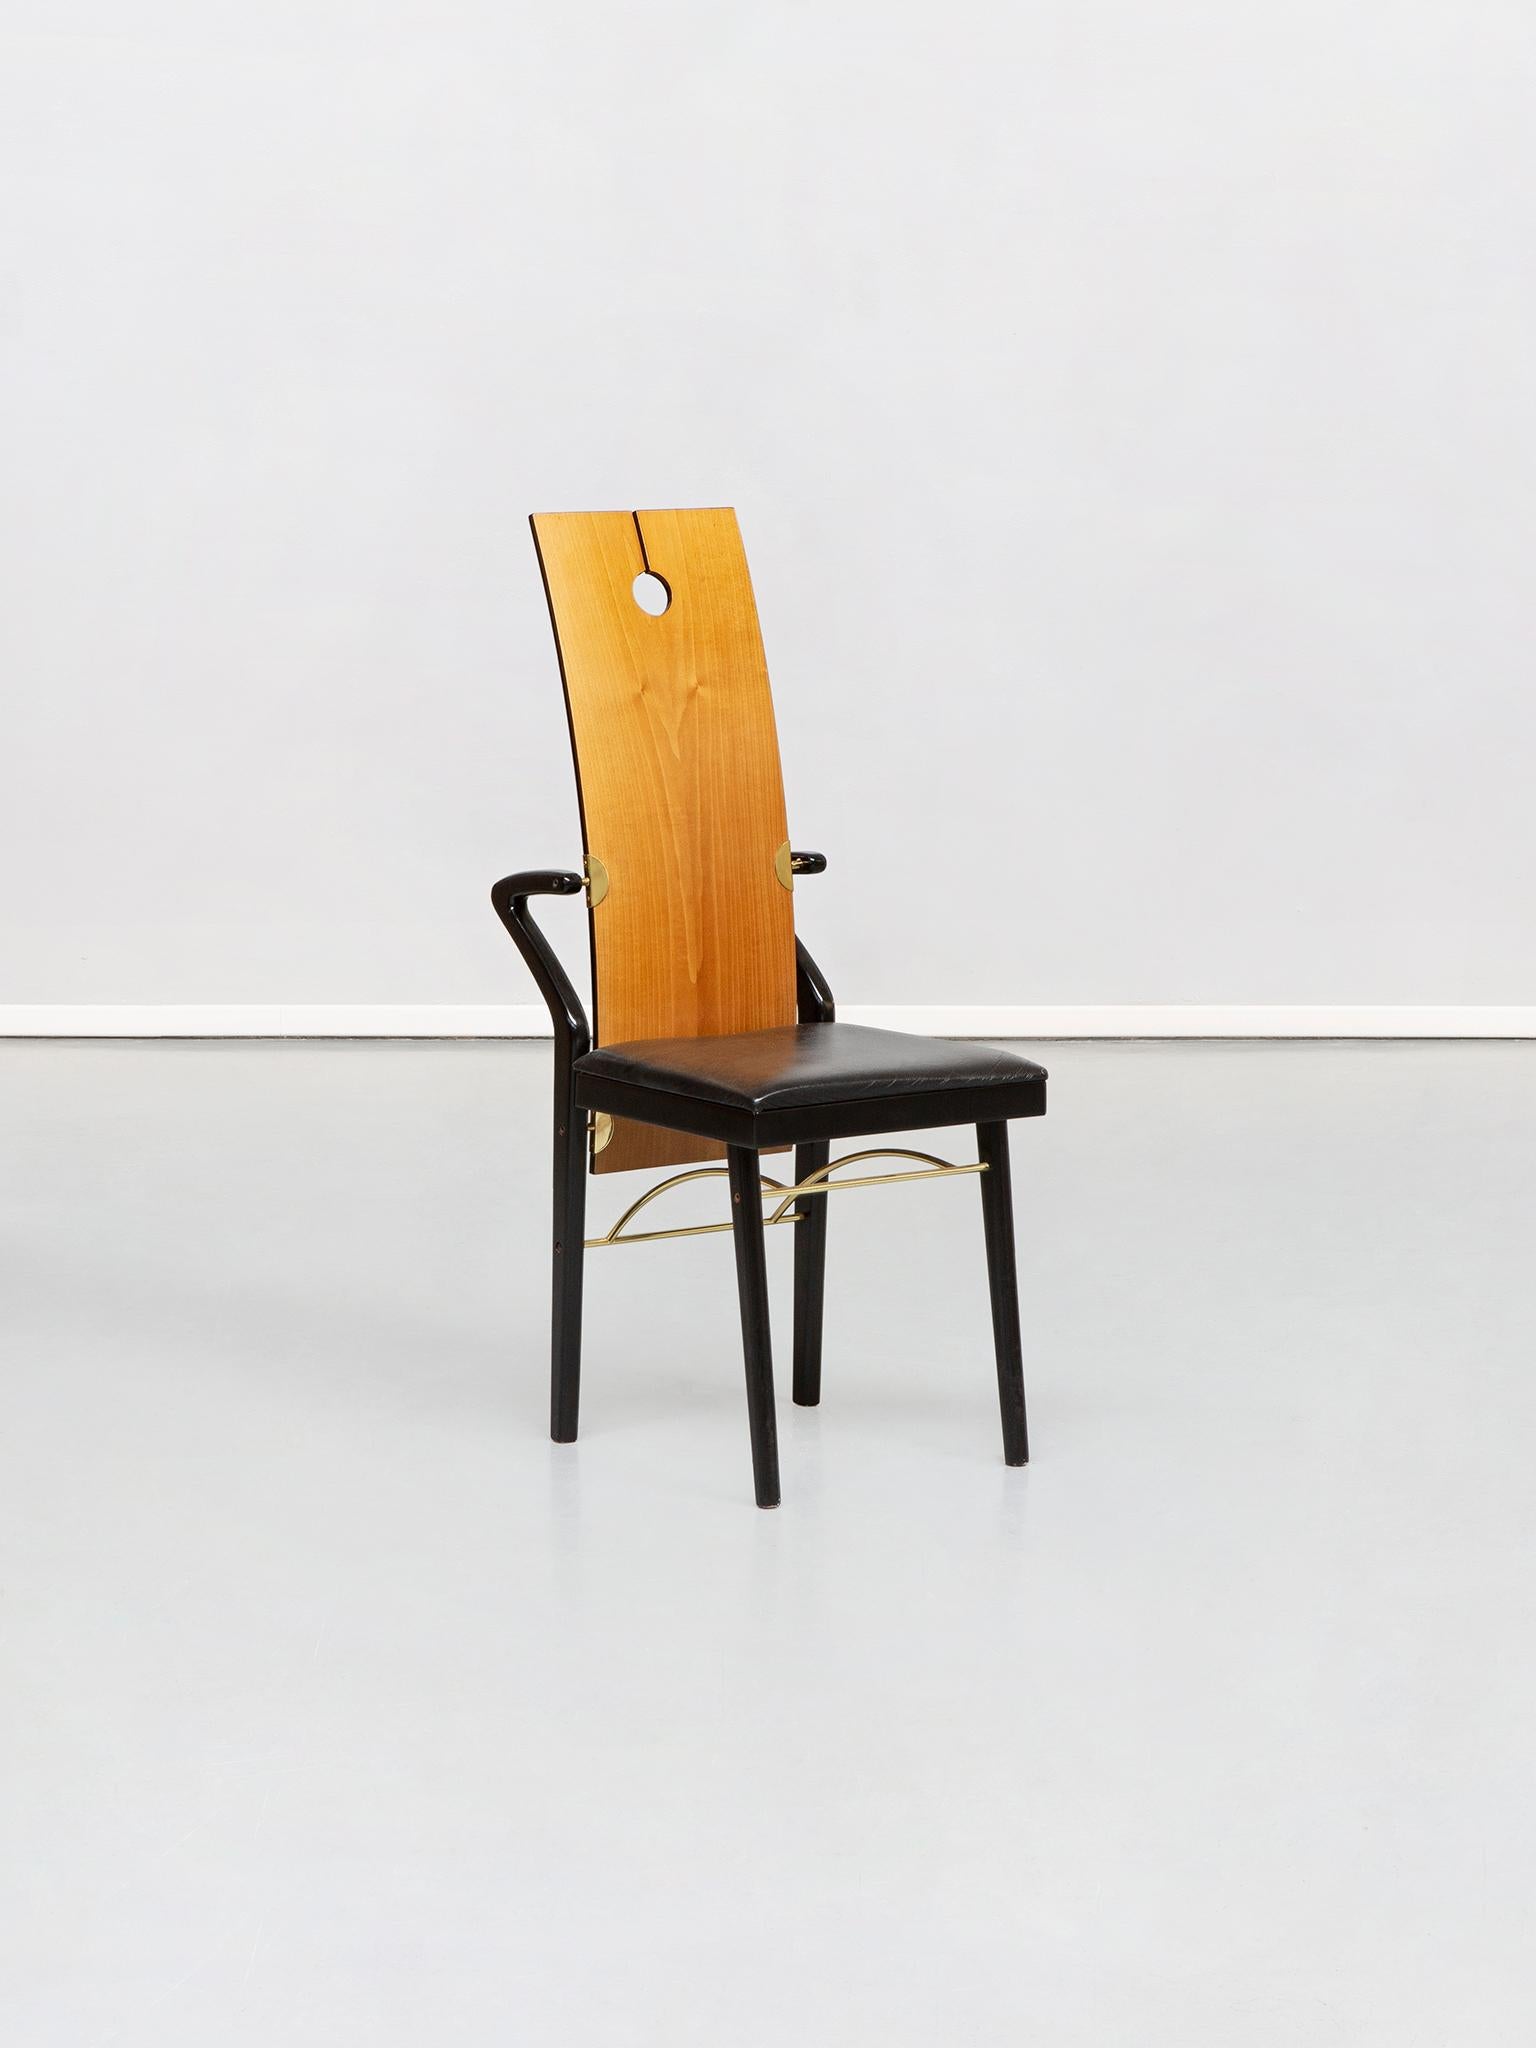 Esstischstühle von Pierre Cardin, 1980er Jahre
Einzigartiger und prächtiger Pierre Cardin Tisch aus den achtziger Jahren. Absolut seltene Produktion, entworfen von Pierre Cardin in Italien.
Rückenlehne aus gebogener Kirsche mit einem Schnitt und